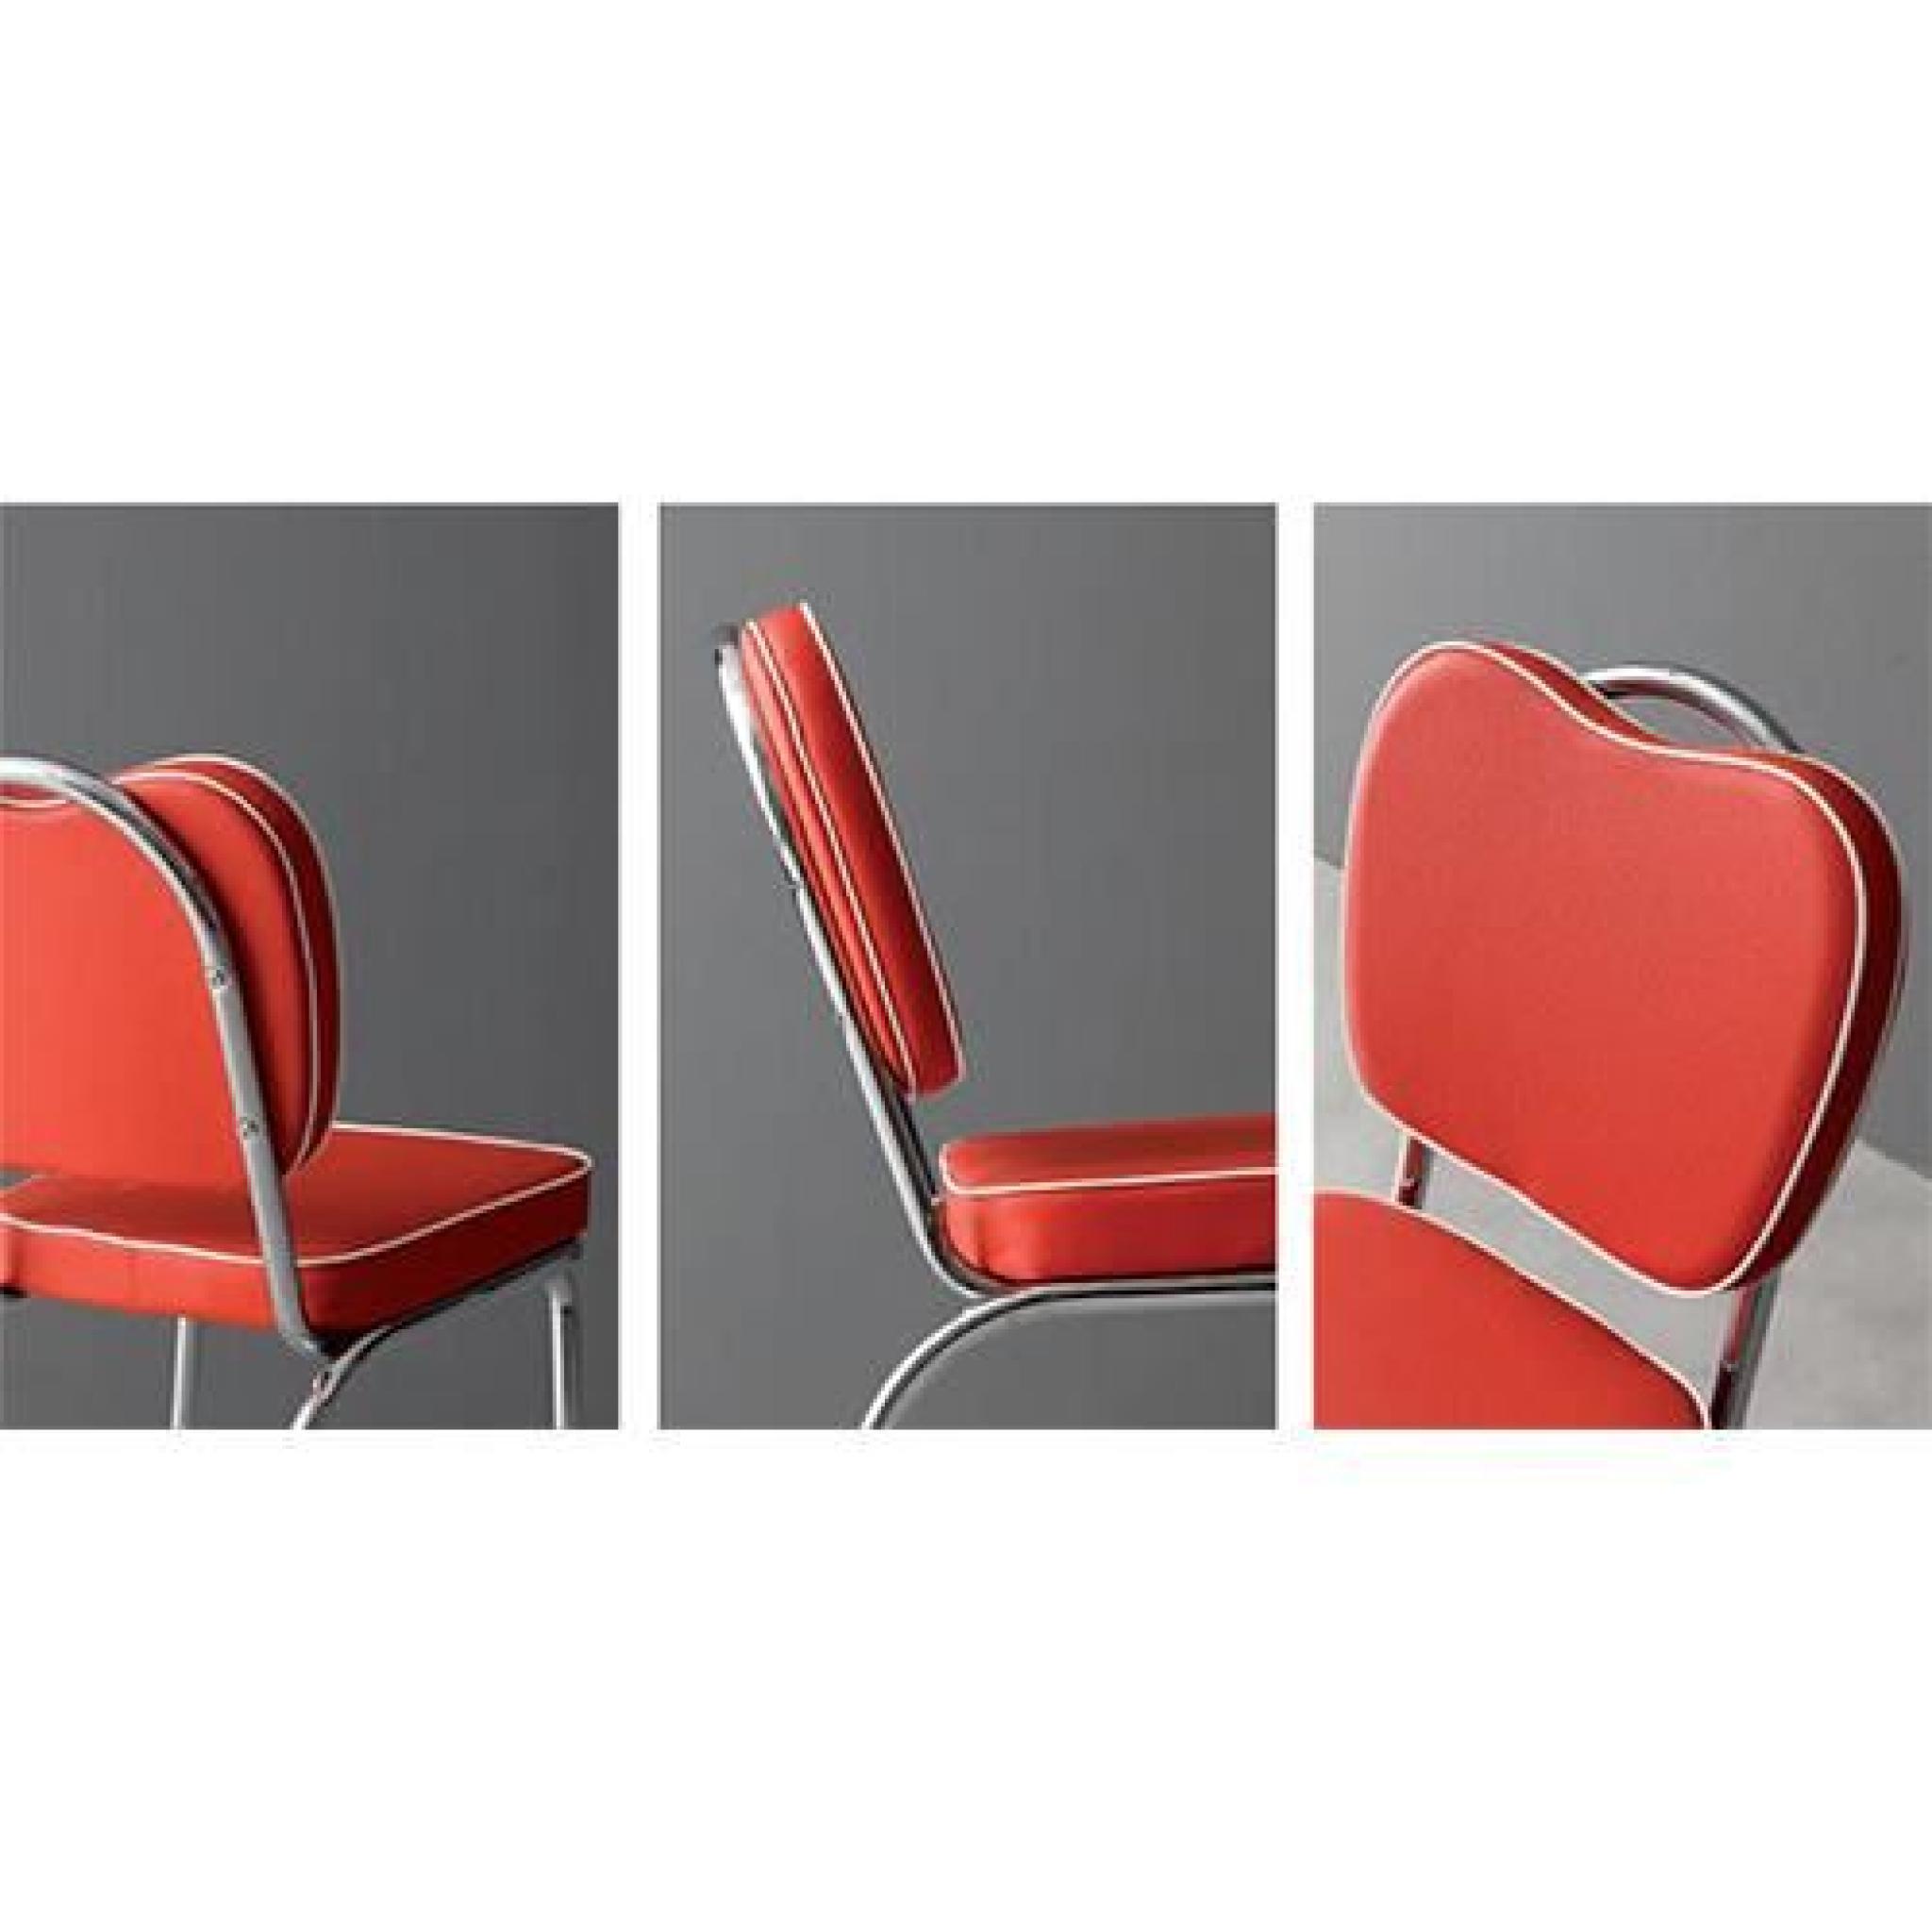 HAPPY - Chaise en simili cuir rouge pas cher